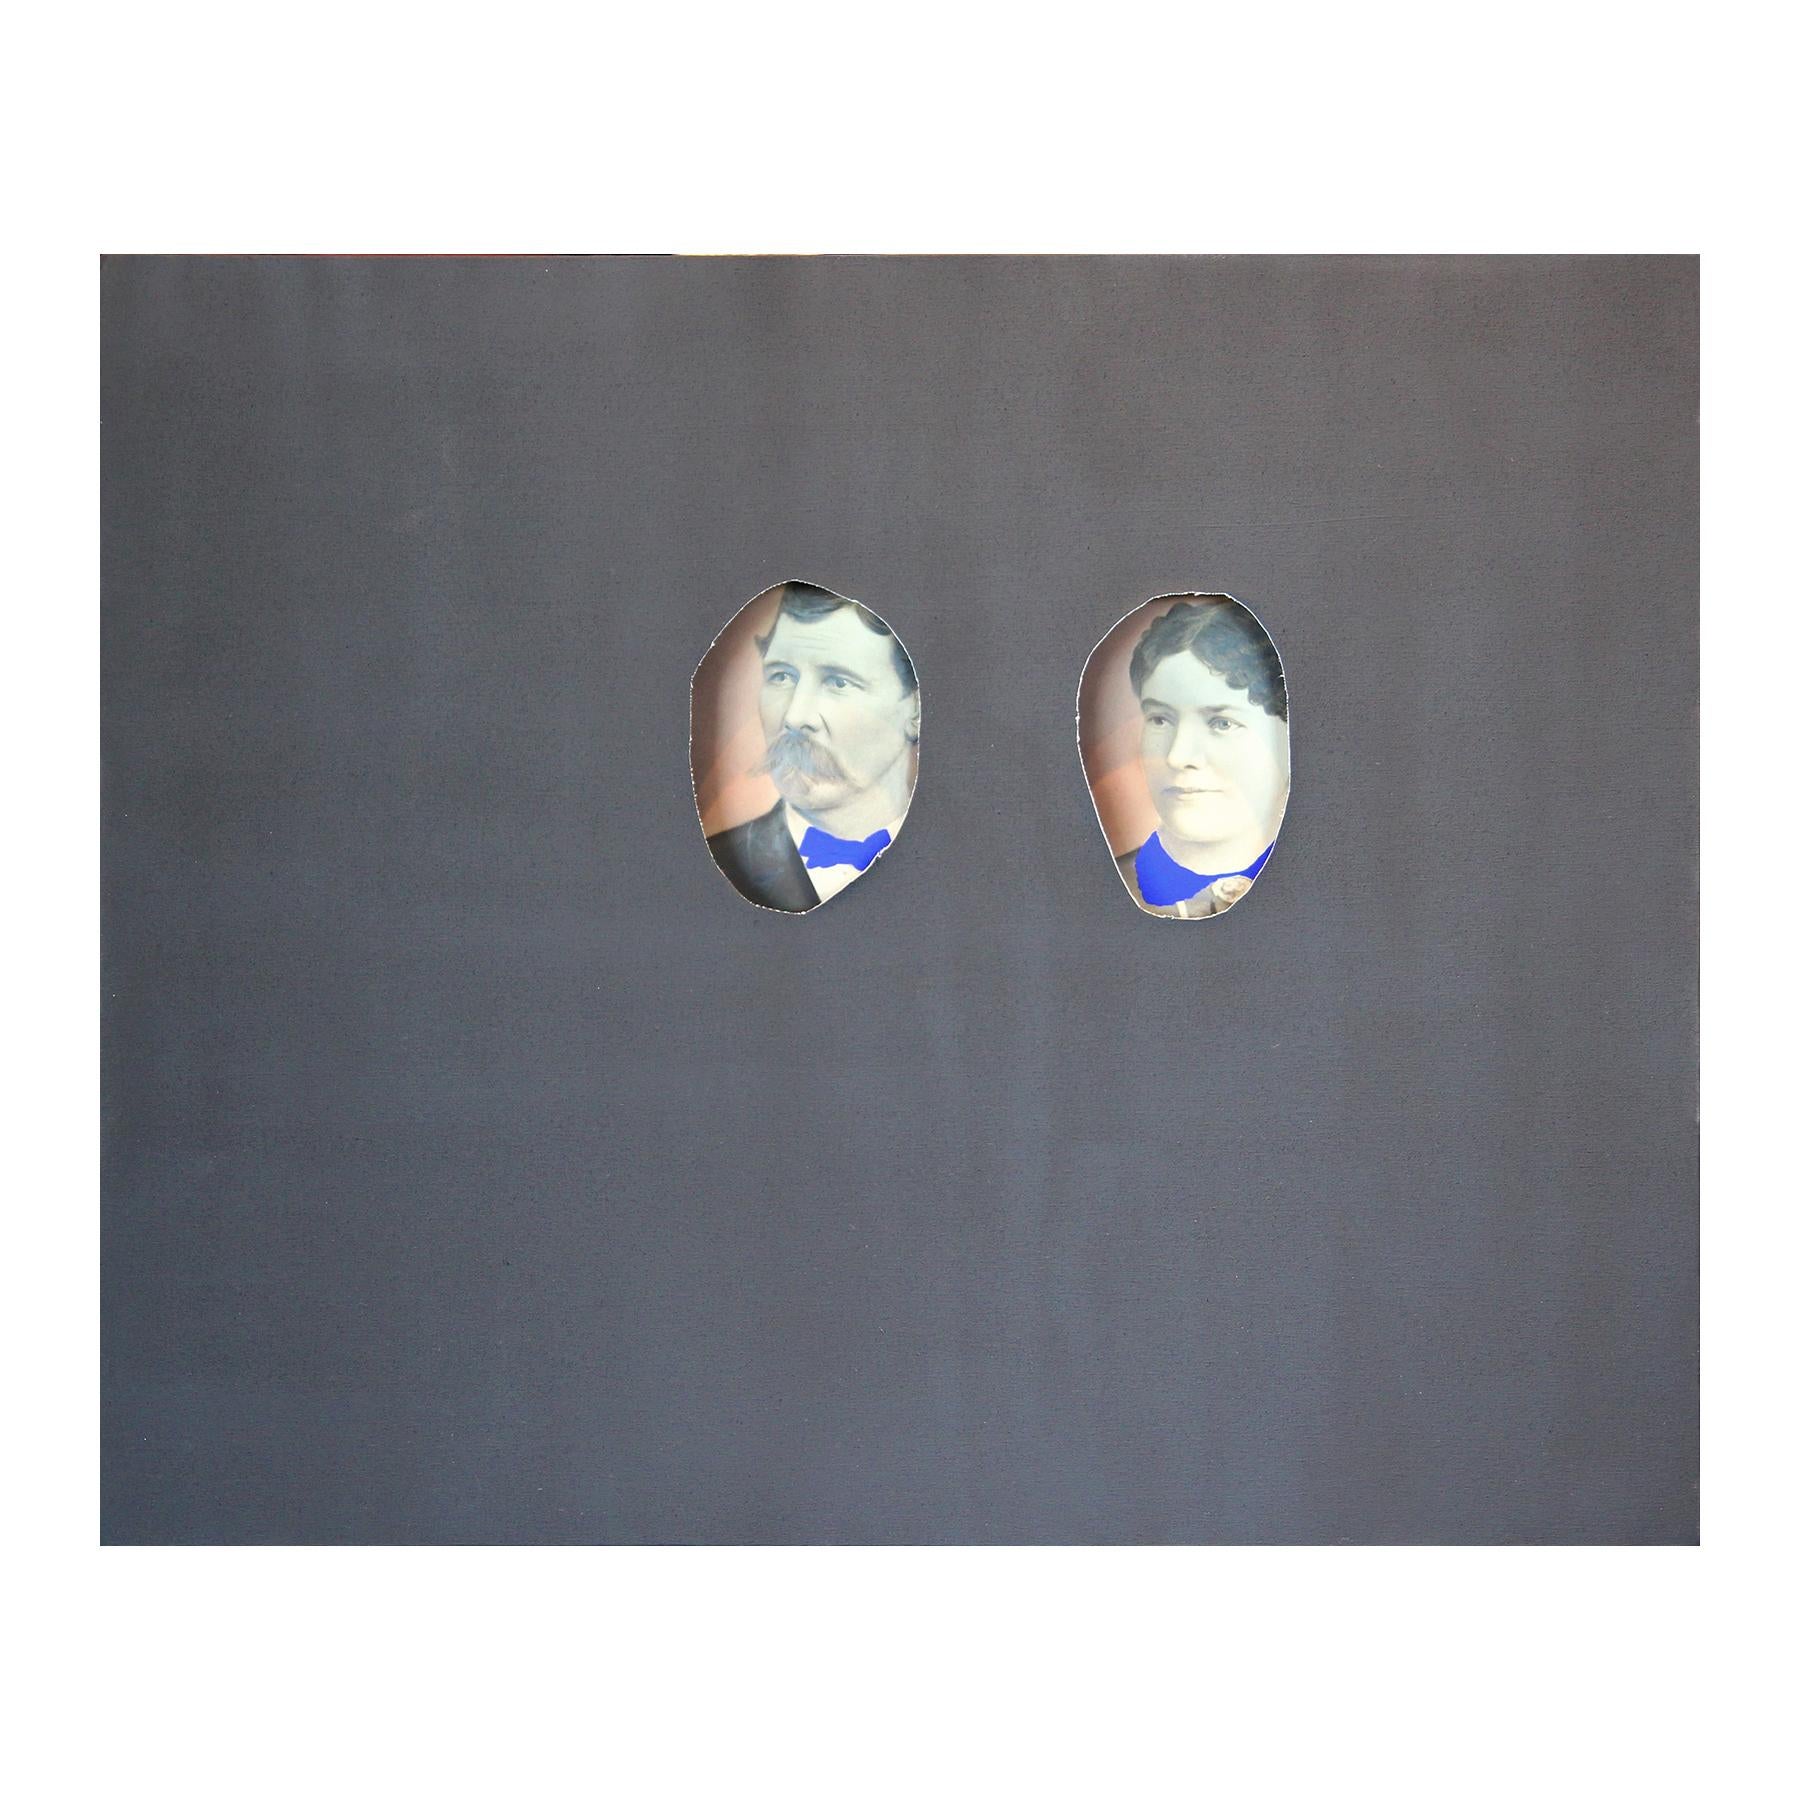 Portrait d'un couple enveloppé de toile noire avec des cols peints en bleu vif